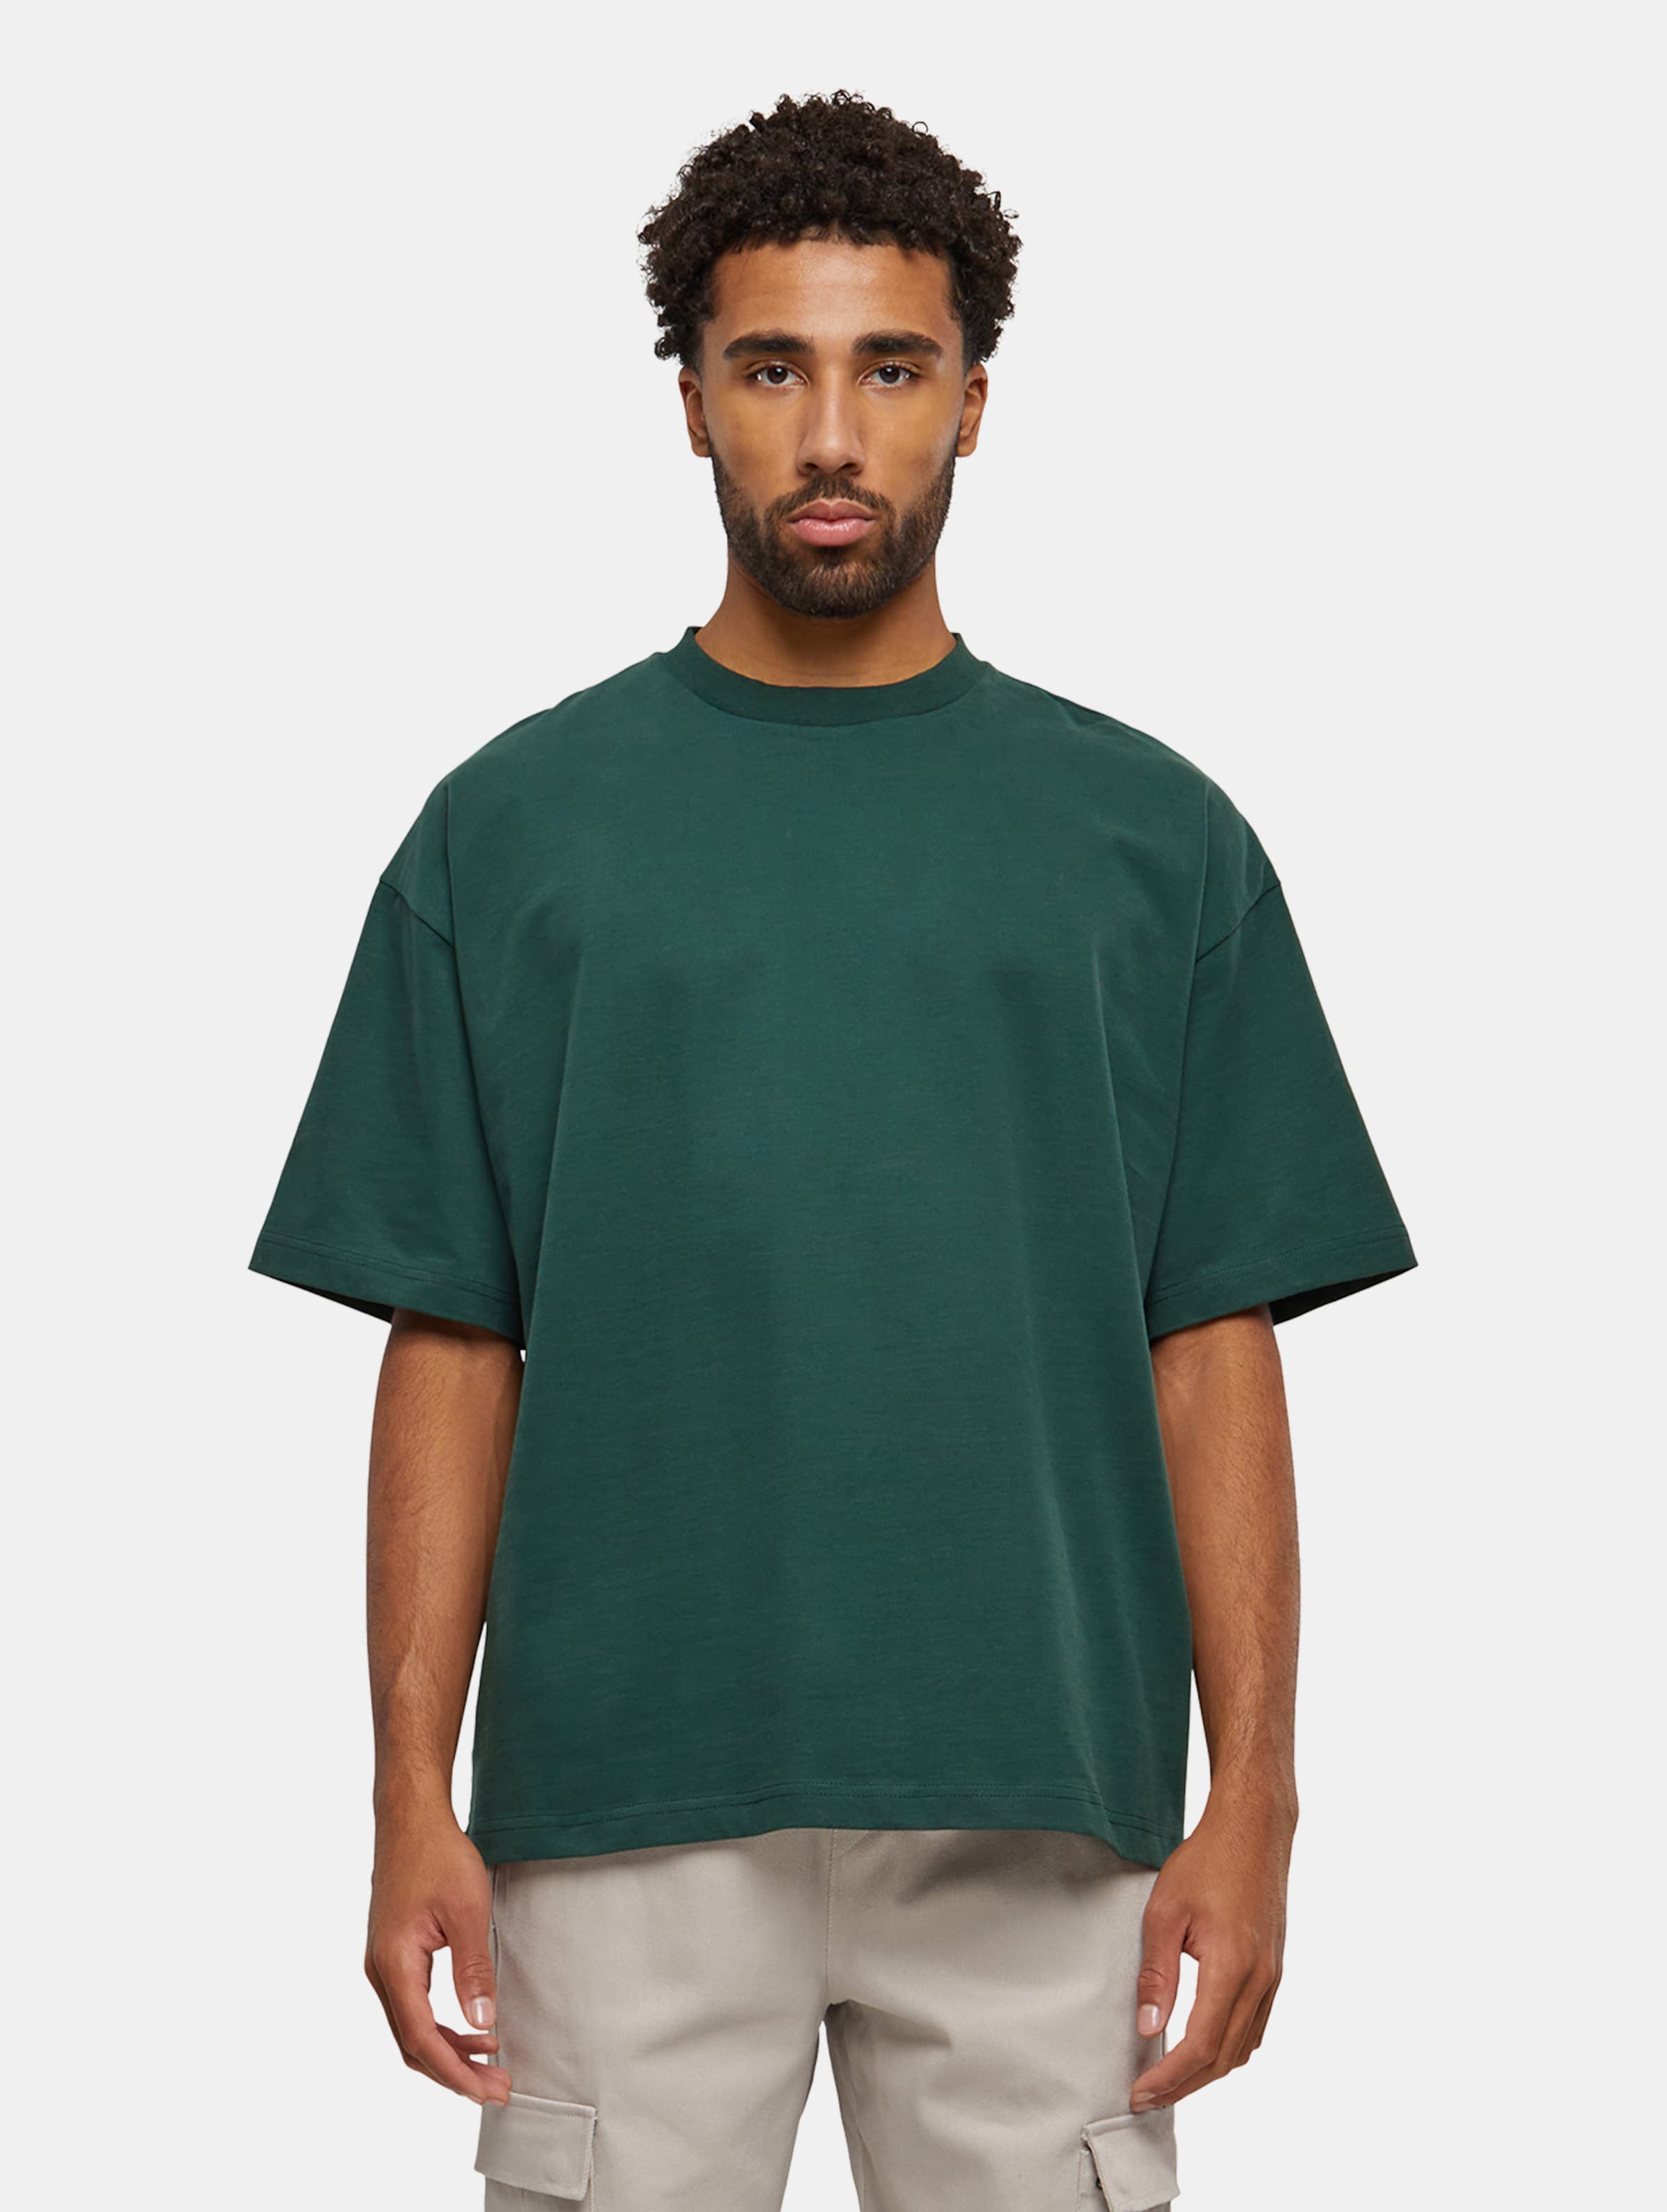 Prohibited Oversized T-Shirts Männer,Unisex op kleur groen, Maat L